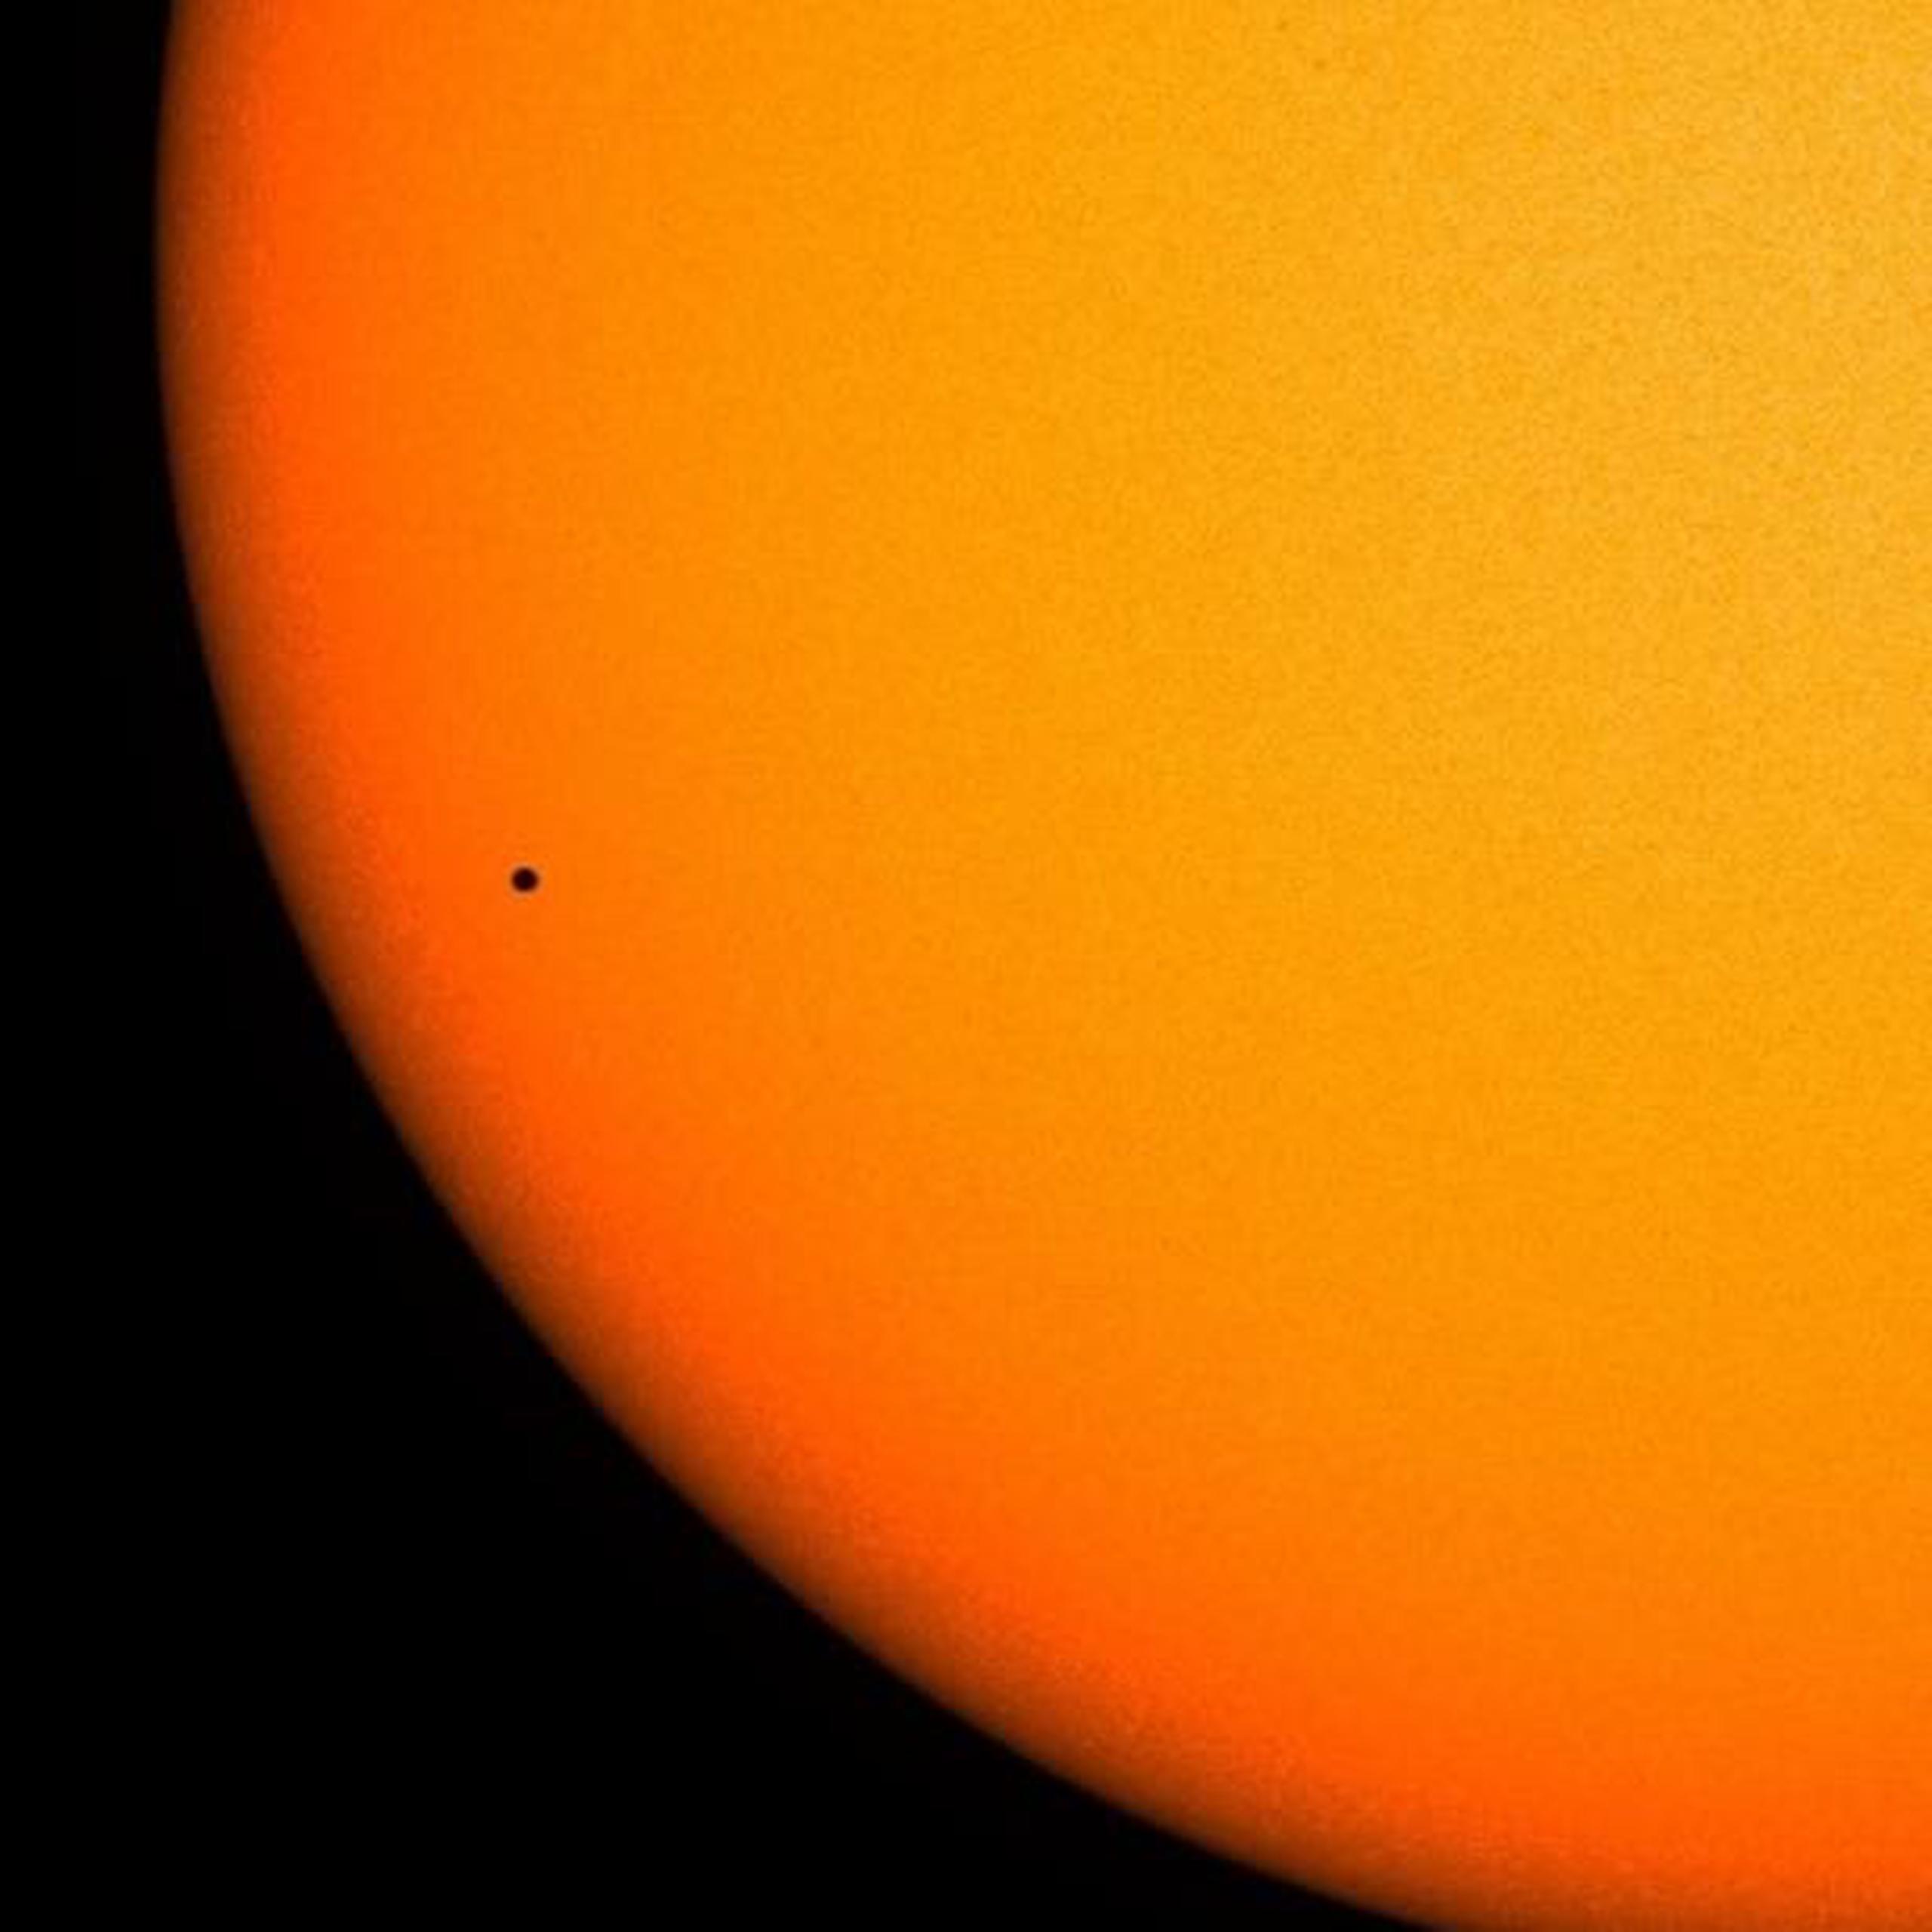 Es importante destacar que nunca se debe mirar al Sol sin los filtros especializados para su observación segura. (NASA)